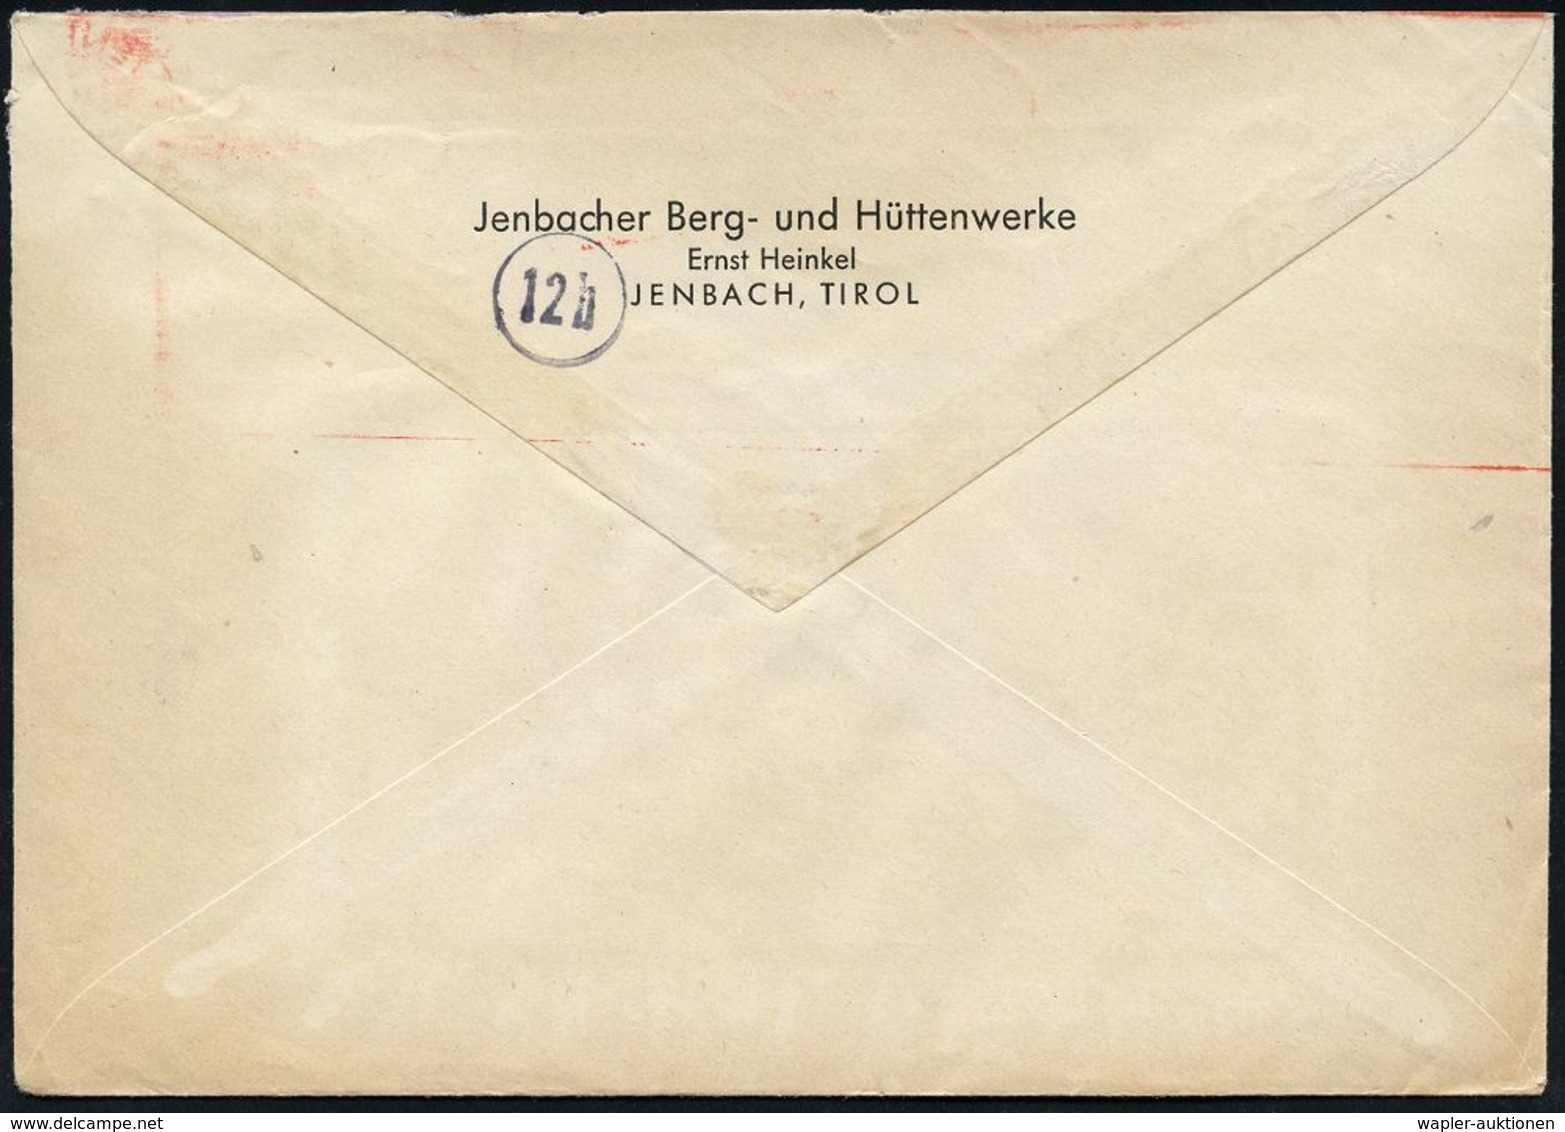 MILITÄRFLUGWESEN / MILITÄRFLUGZEUGE : JENBACH/ ERNST HEINKEL/ AG/ WERK JENBACH 1944 (23.12.) Sehr Seltener AFS = Heinkel - Aerei